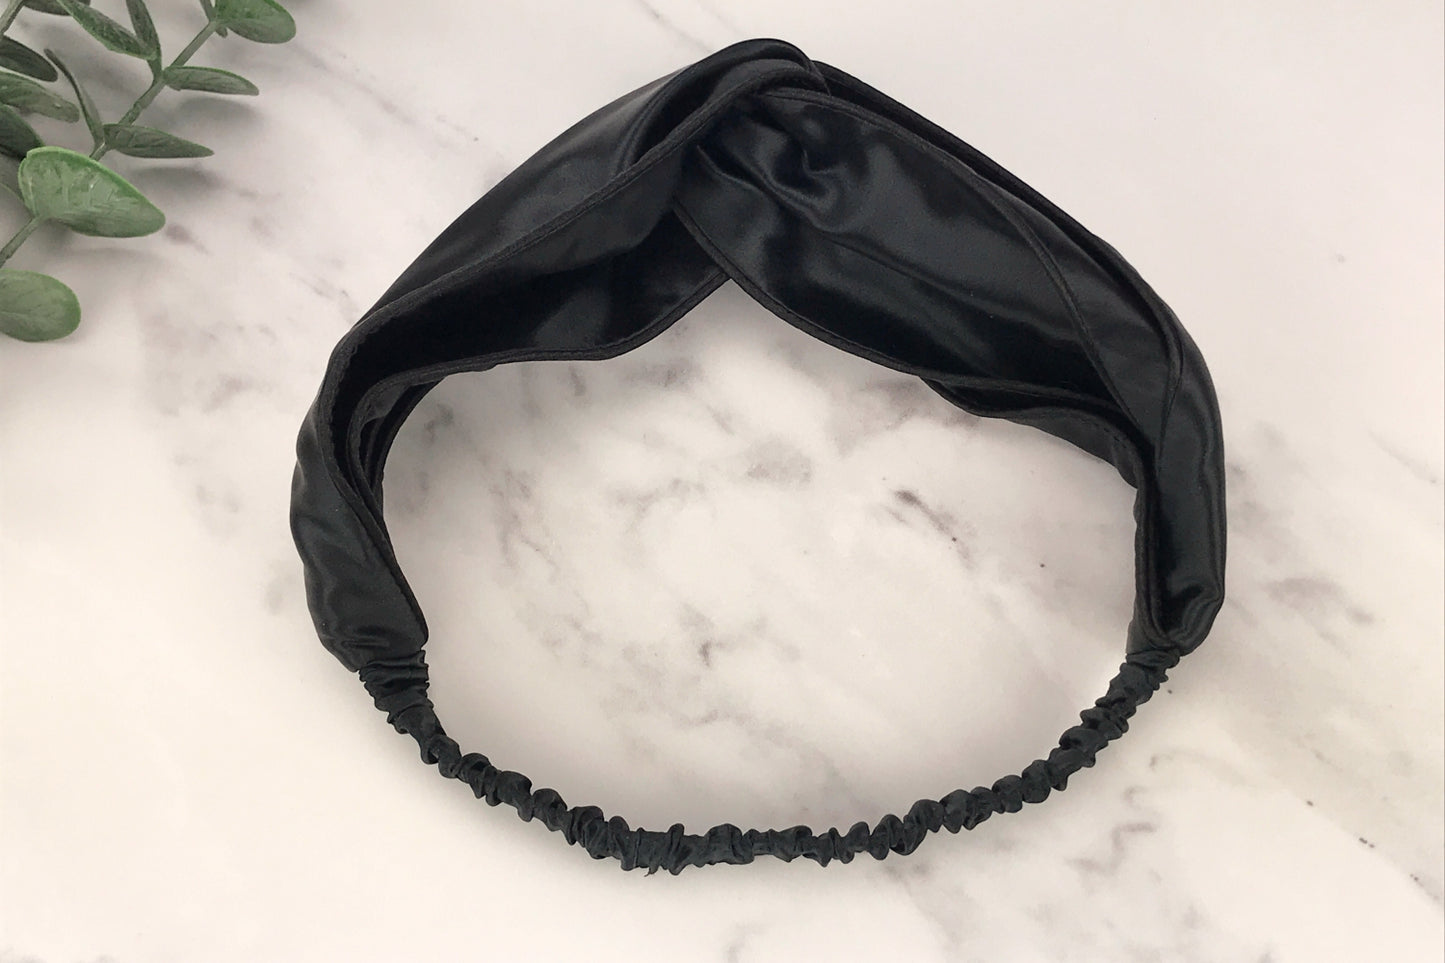 celestial silk twisted black silk headband for hair on counter with aloe